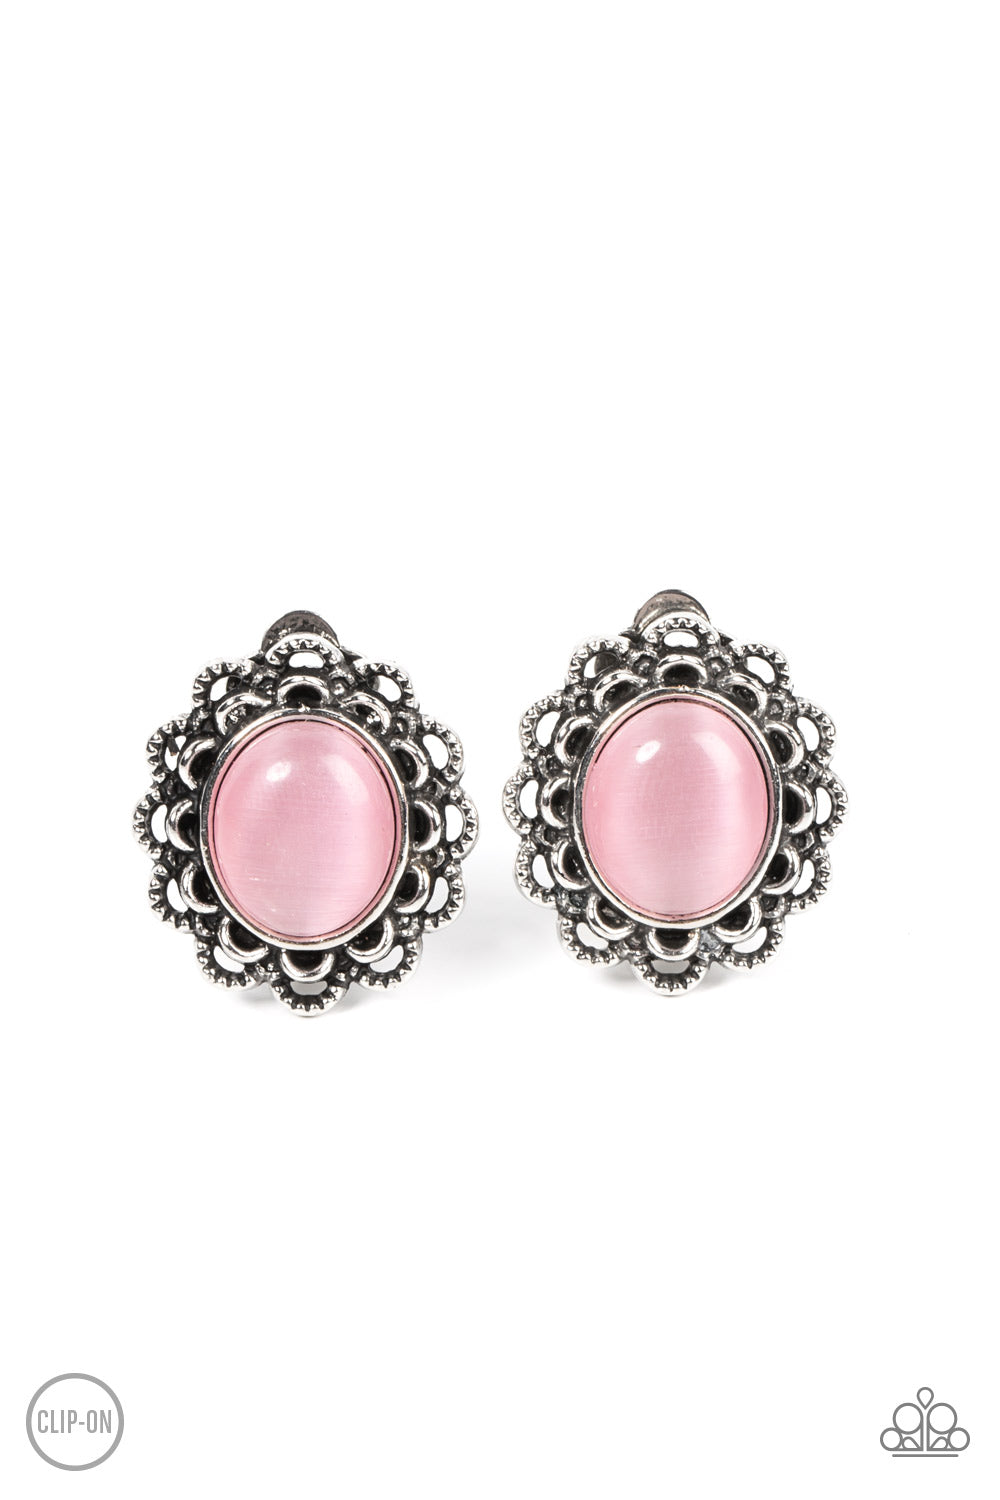 Garden Gazebo Paparazzi Accessories Clip on Earrings - Pink